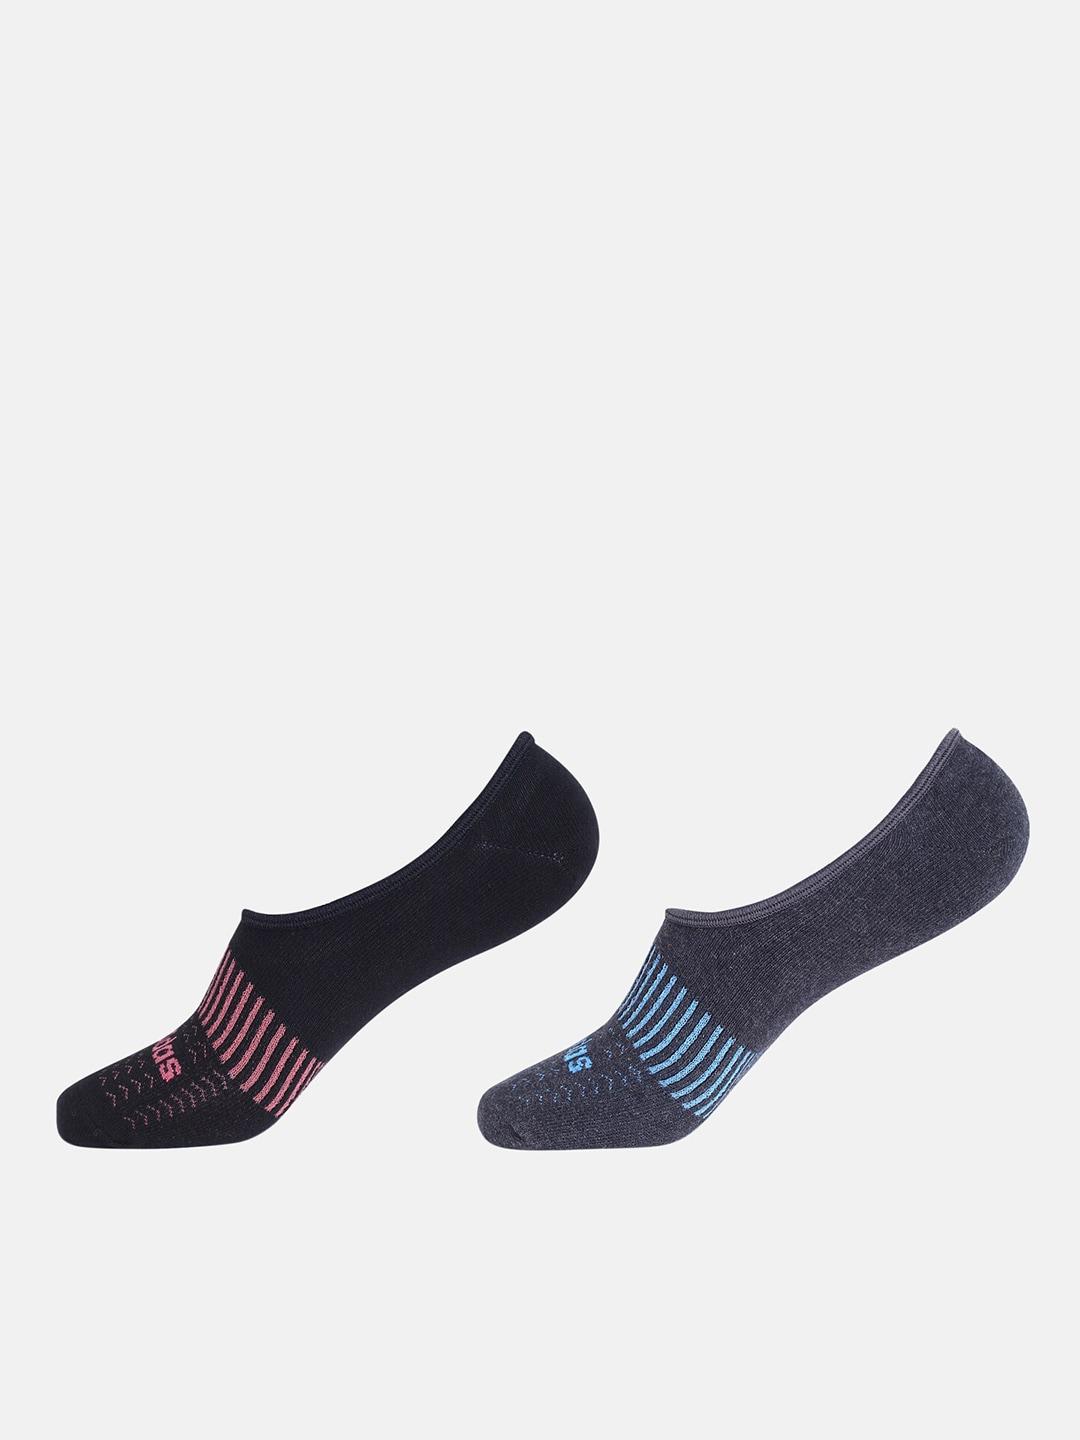 ADIDAS Men Pack Of 2 Patterned Shoe Liner Socks